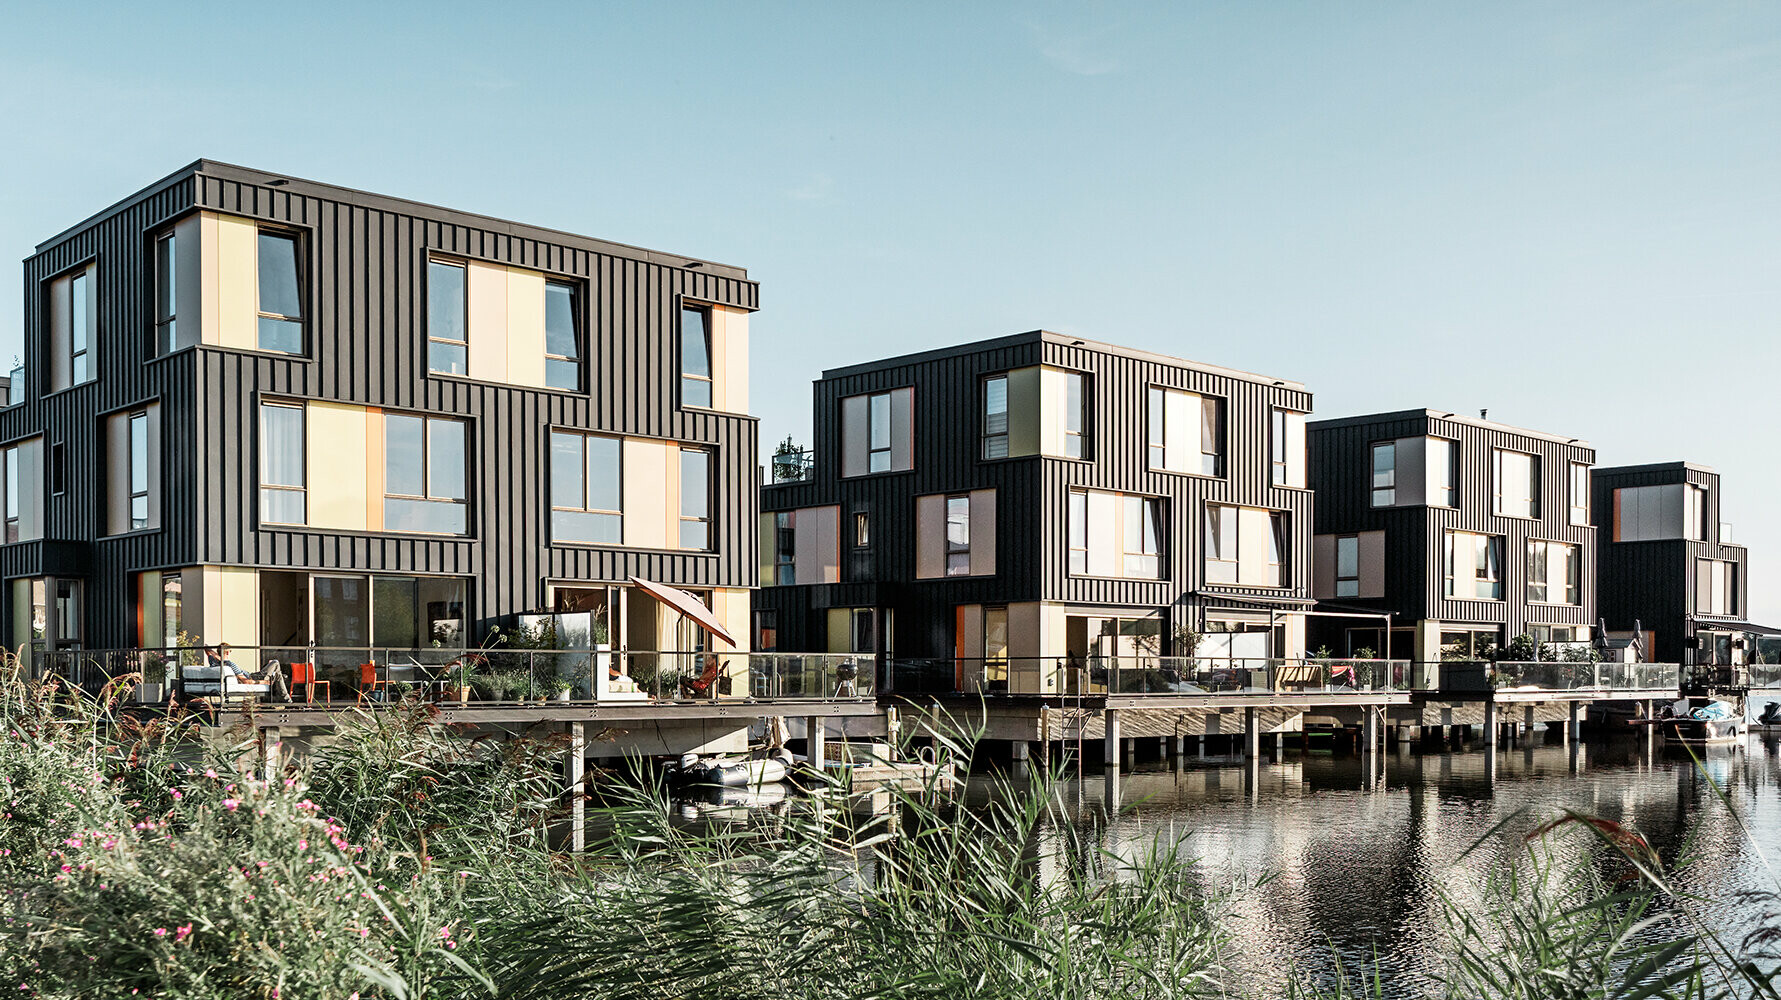 Wohnsiedlung in Amsterdam mit Wohnhäusern mit anthrazitfarbener Prefalz-Fassade